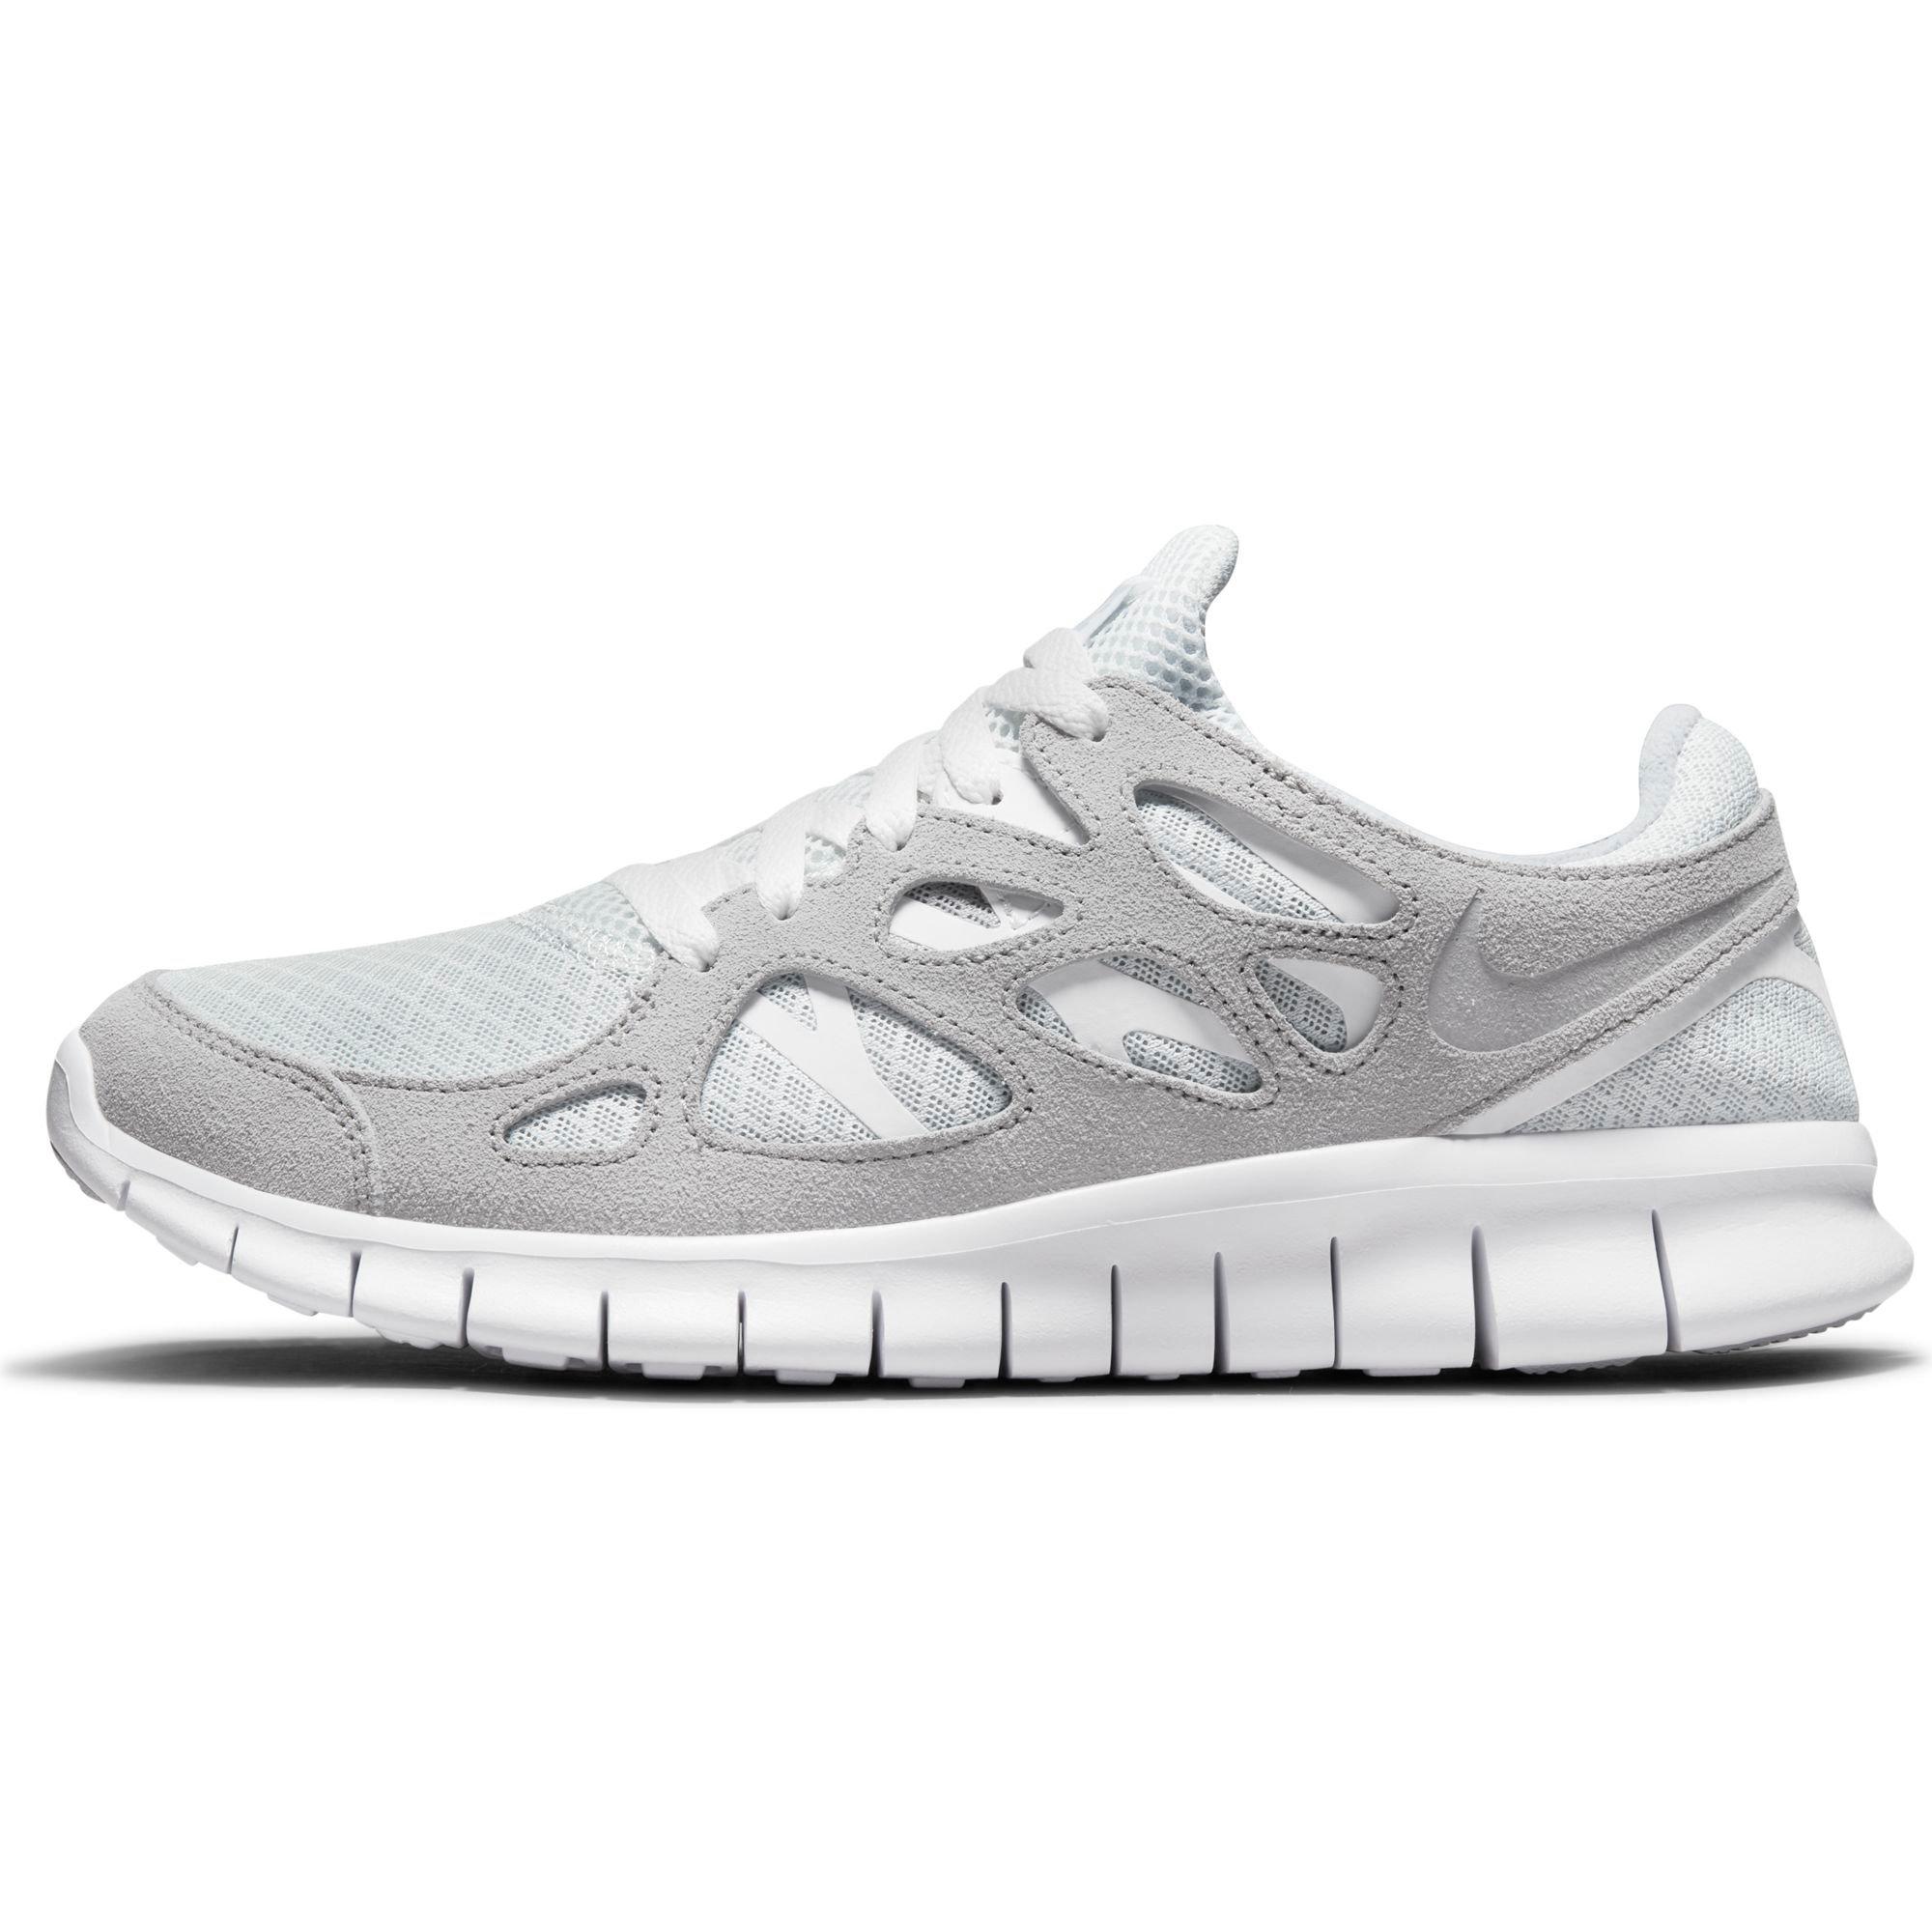 Nike Free Run 2 "Wolf Grey/Pure Platinum/White" Shoe